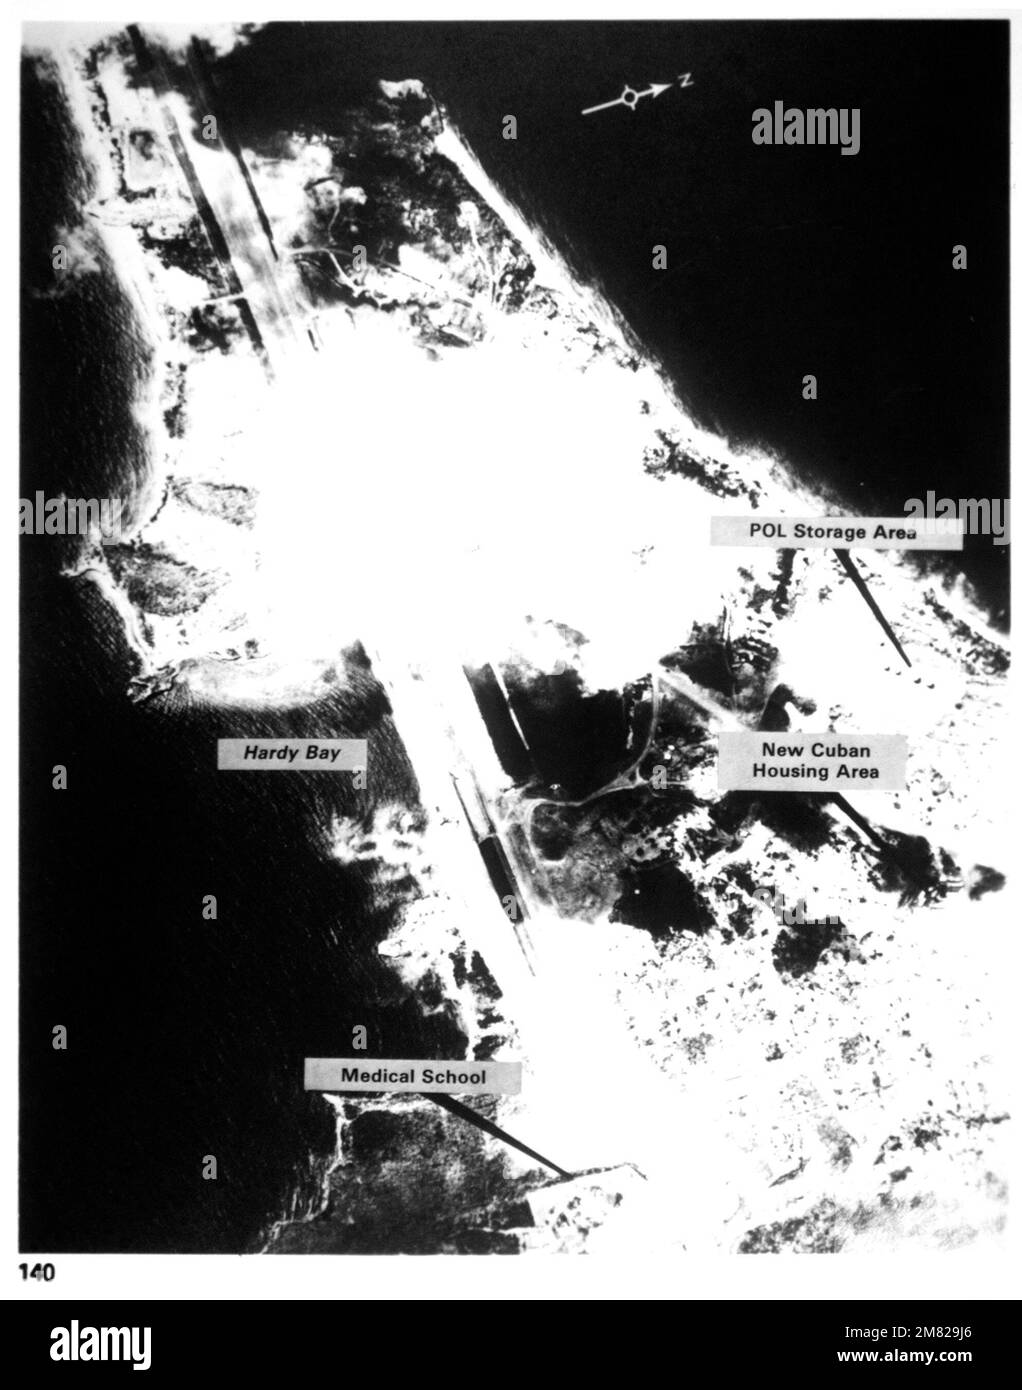 Aérodrome de point Salines, Grenade. Courtoisie de la puissance militaire soviétique, 1984. PHOTO no 140, page 129. Pays : inconnu Banque D'Images